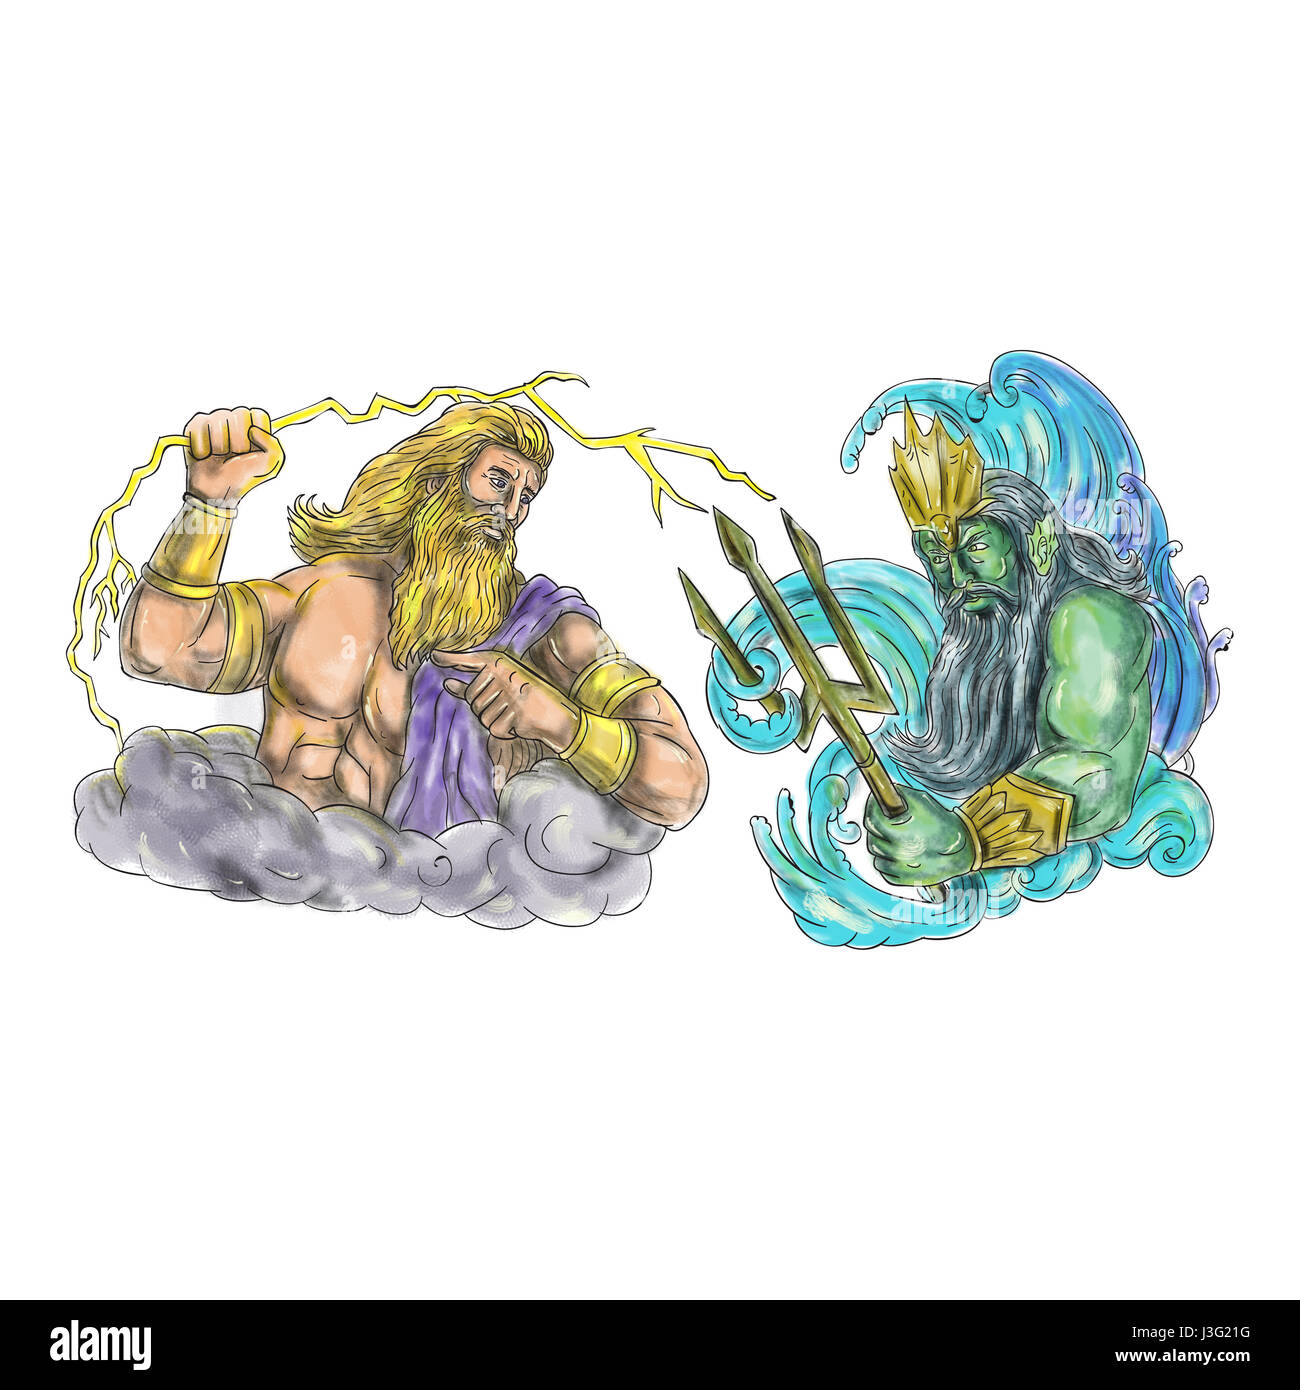 Ilustración estilo tatuaje de Zeus, el dios griego del cielo y soberano de los dioses olímpicos esgrimiendo sosteniendo un rayo rayo versus poseidon holdin Foto de stock